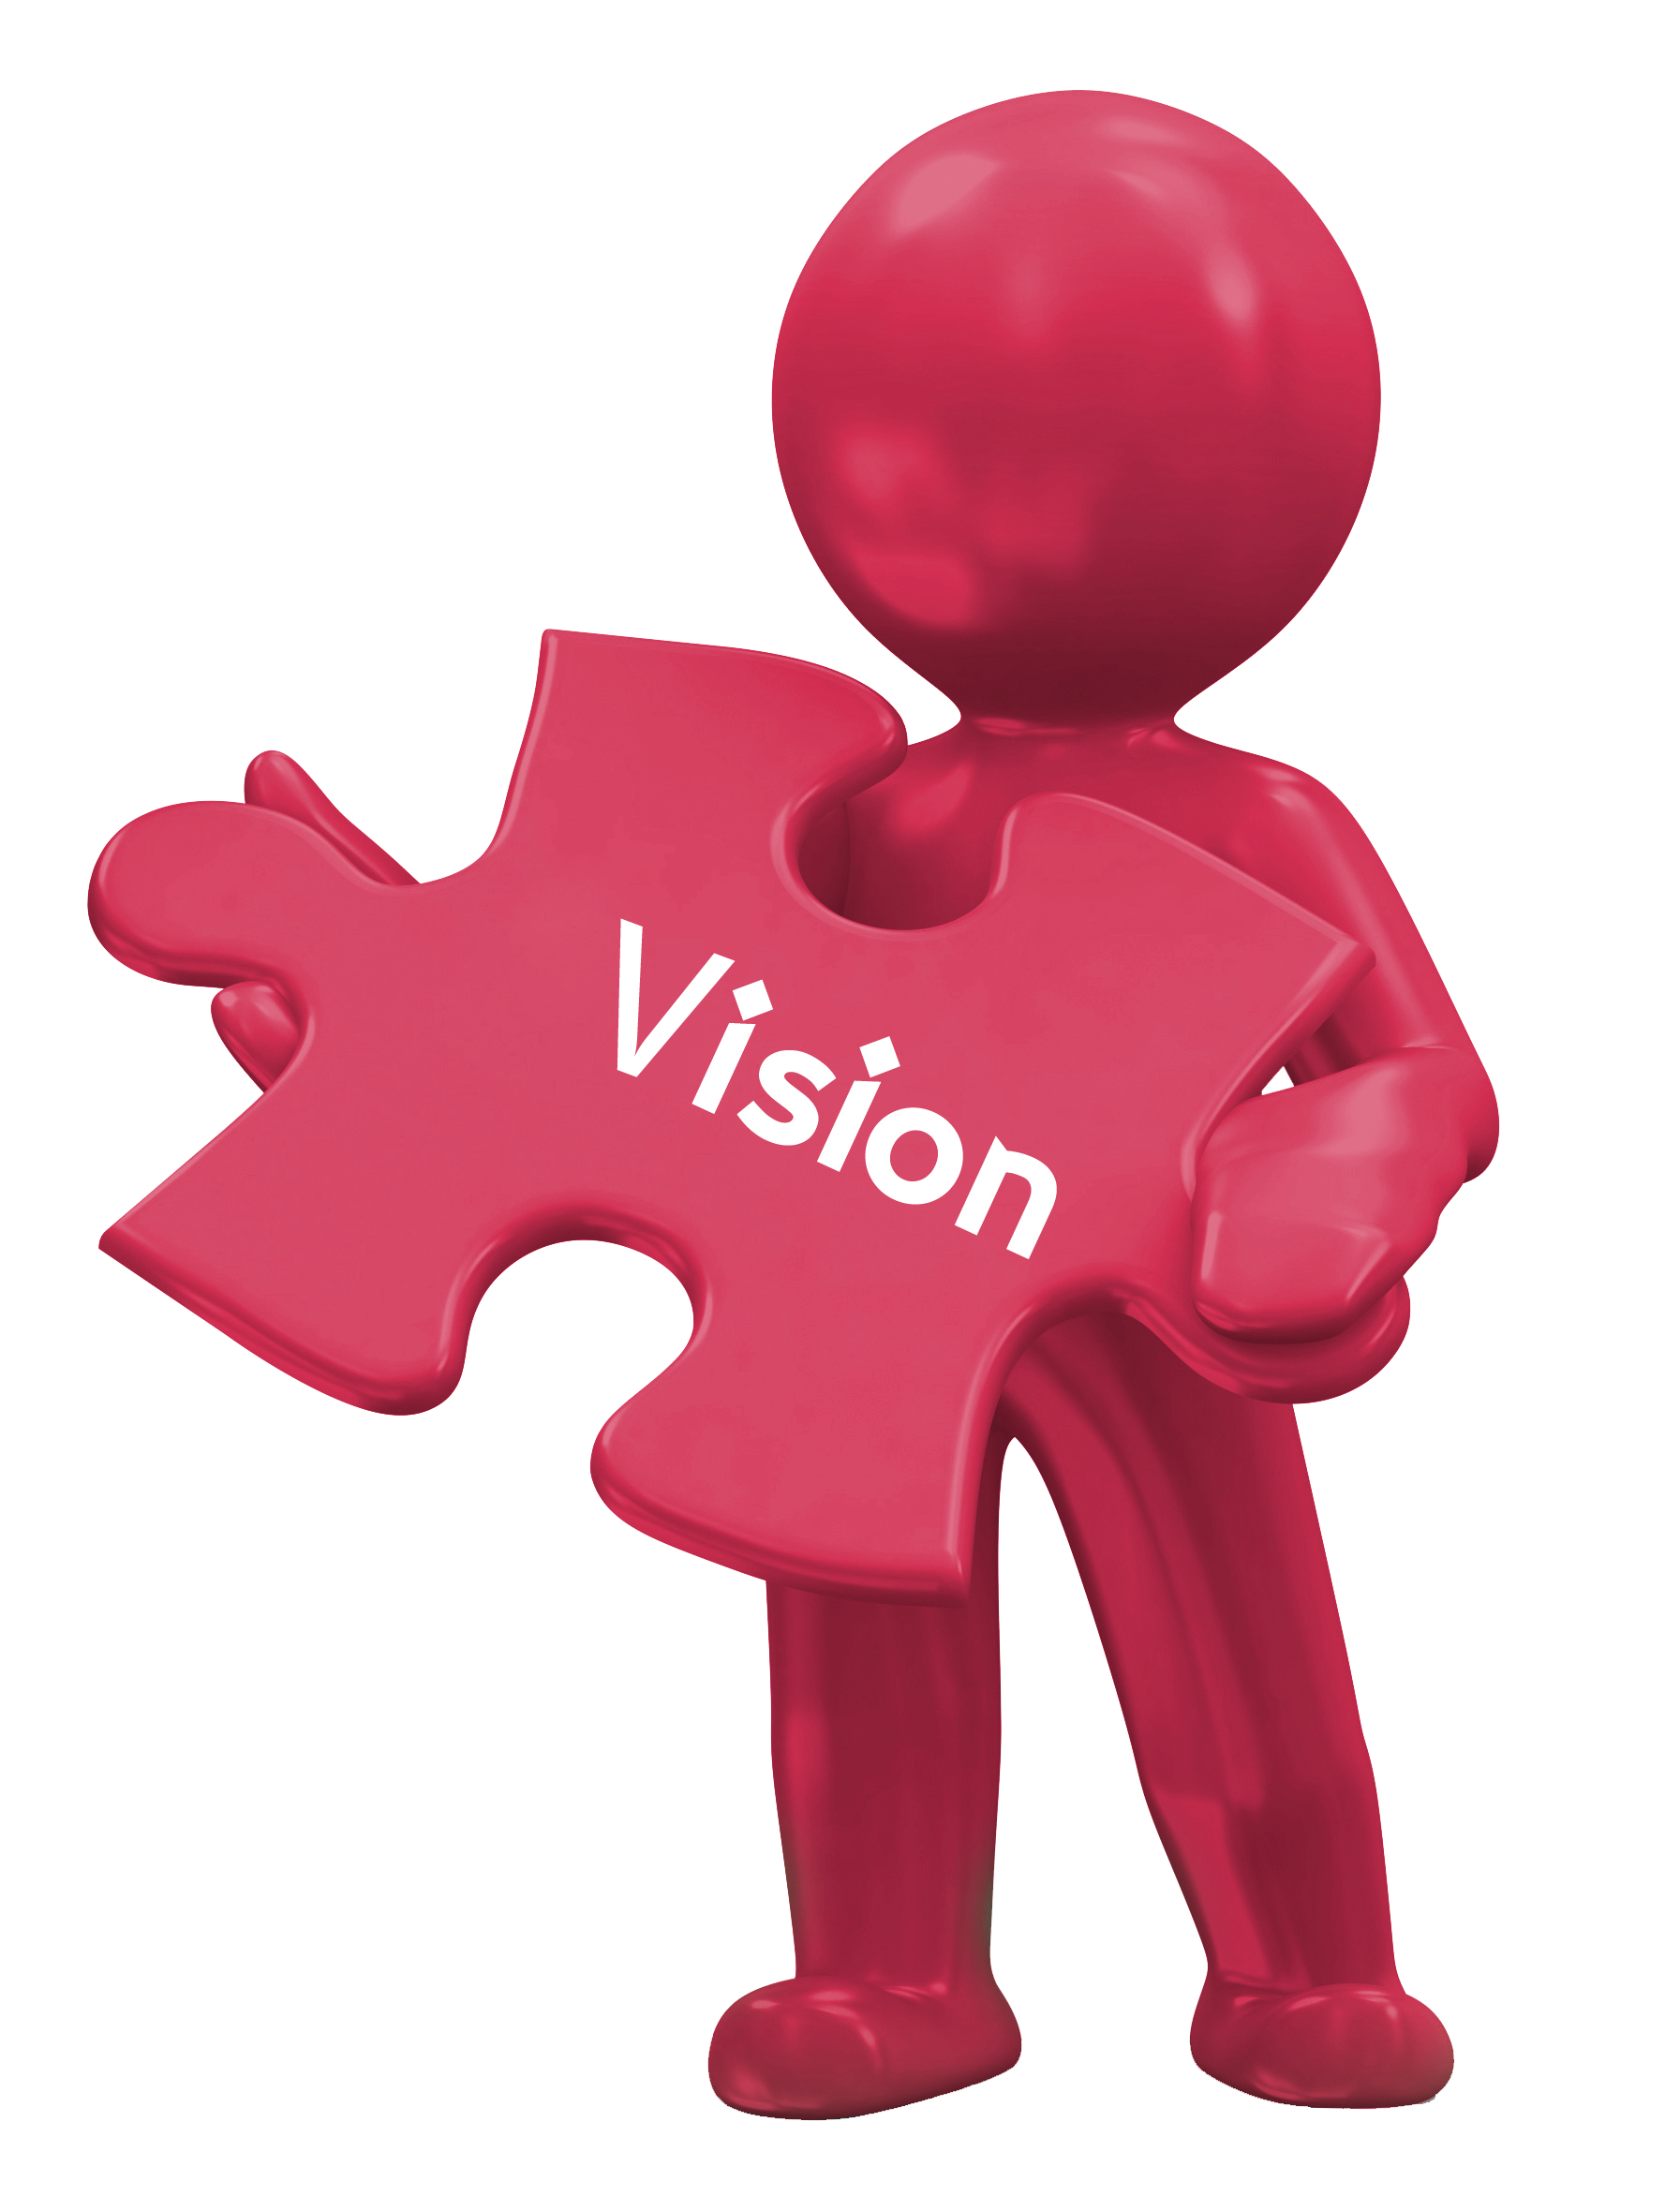 Mision Vision - Municipalidad Distrital de Llusco